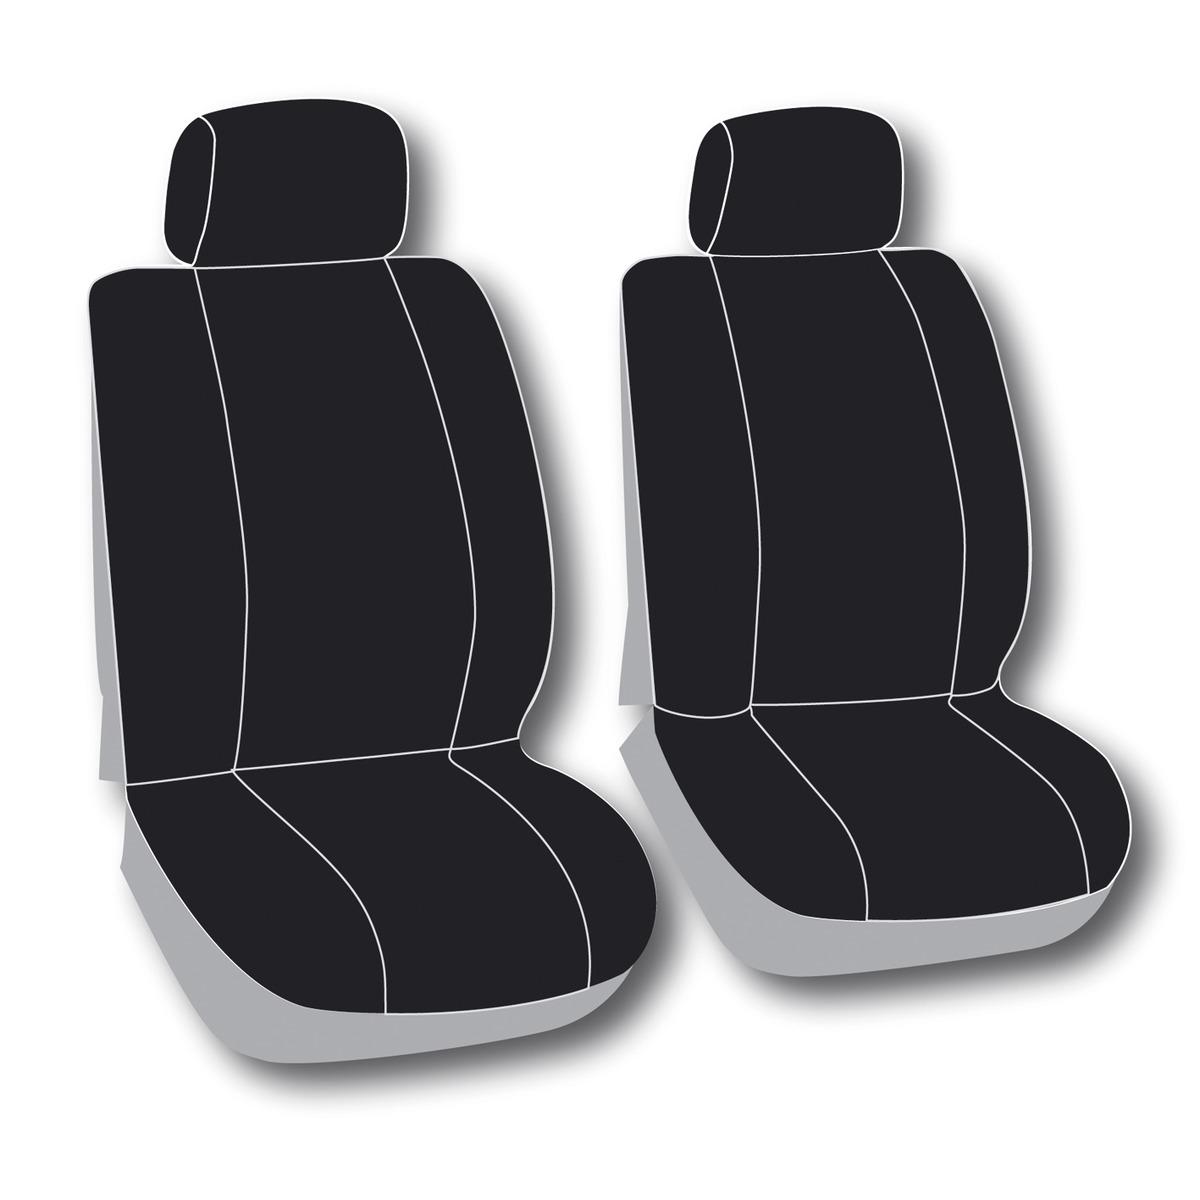 Housses de sièges auto 6 pièces - L 62 x l 52 cm - Noir